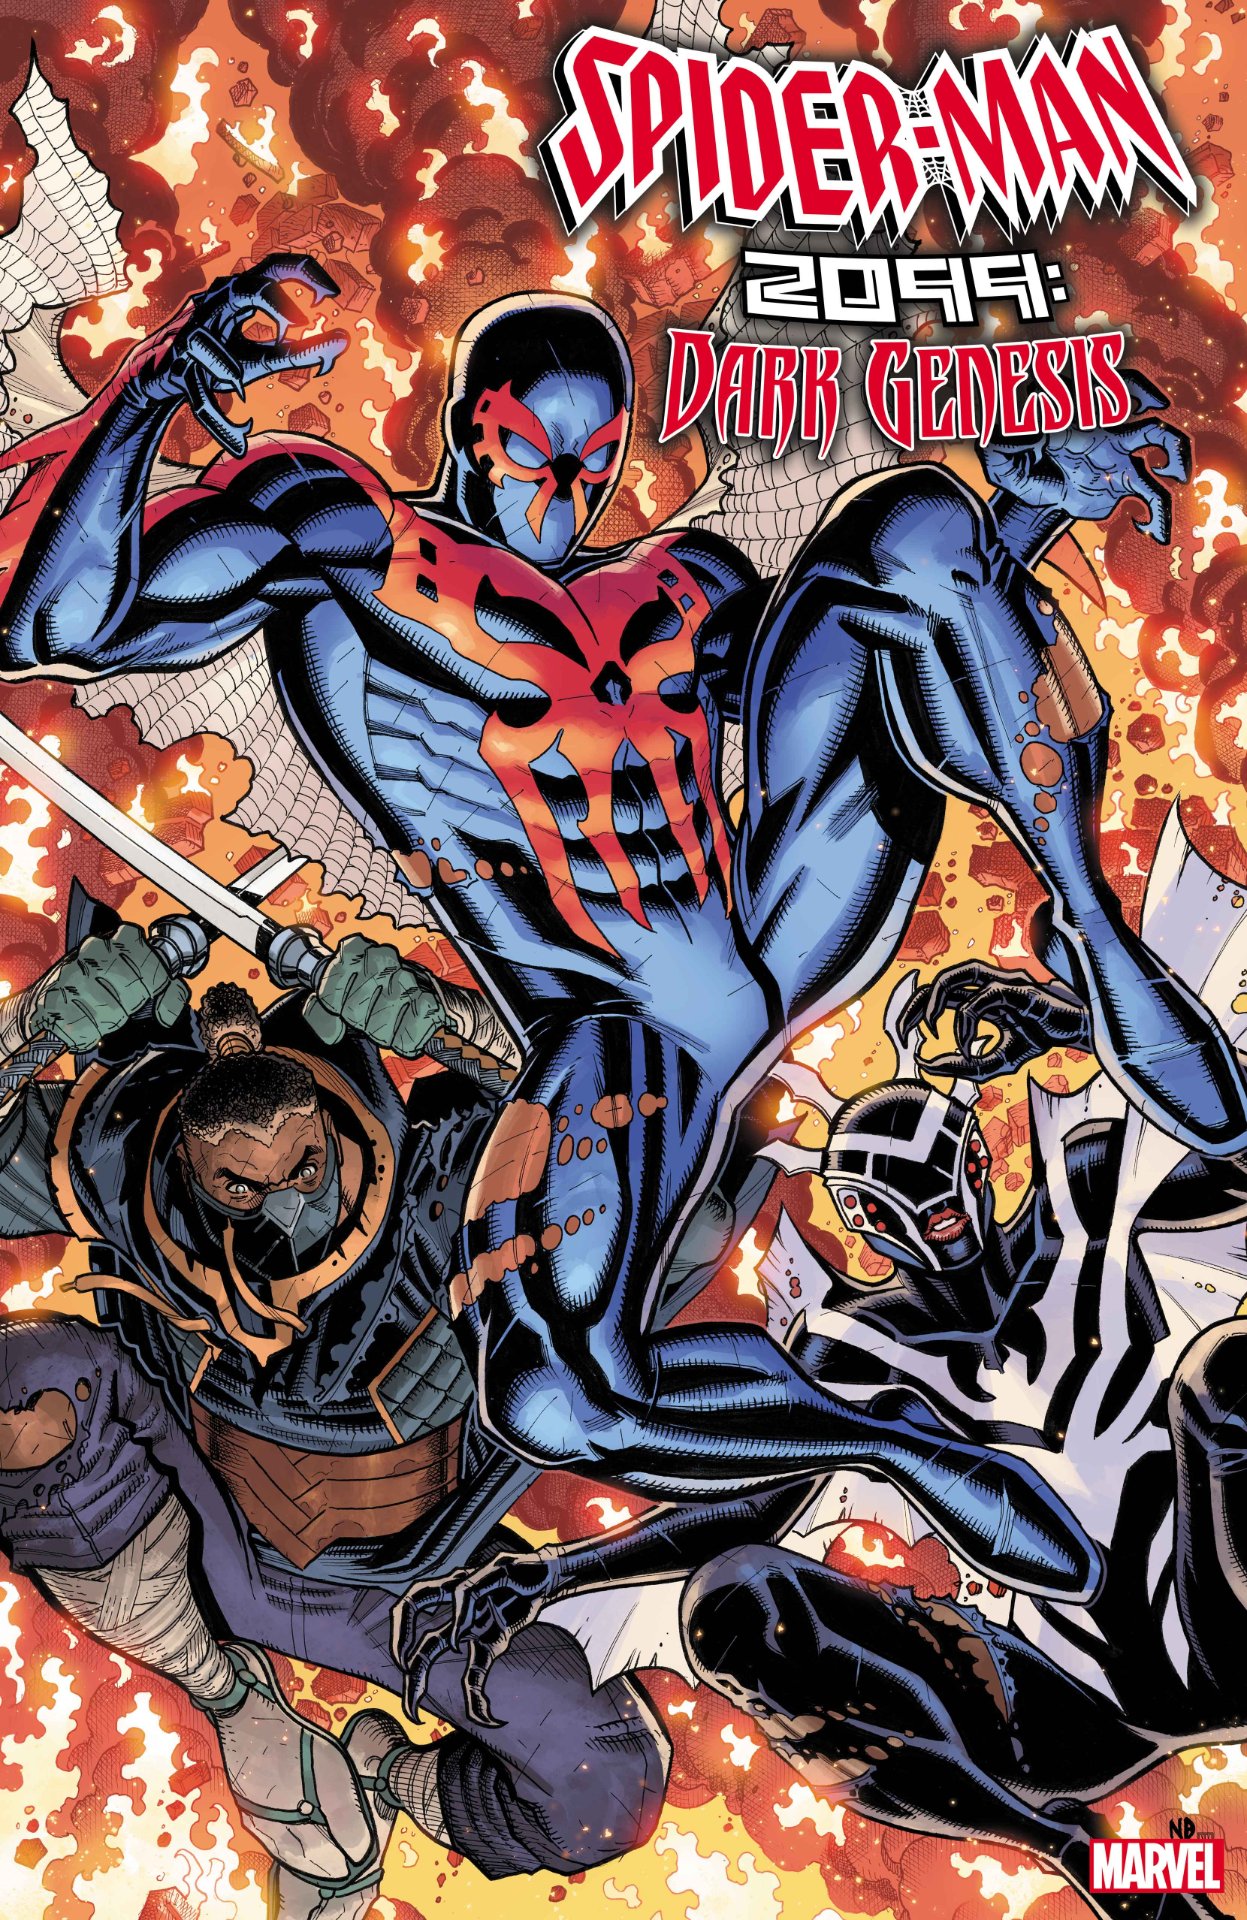 Portada de Spider-Man 2099: Dark Genesis #2